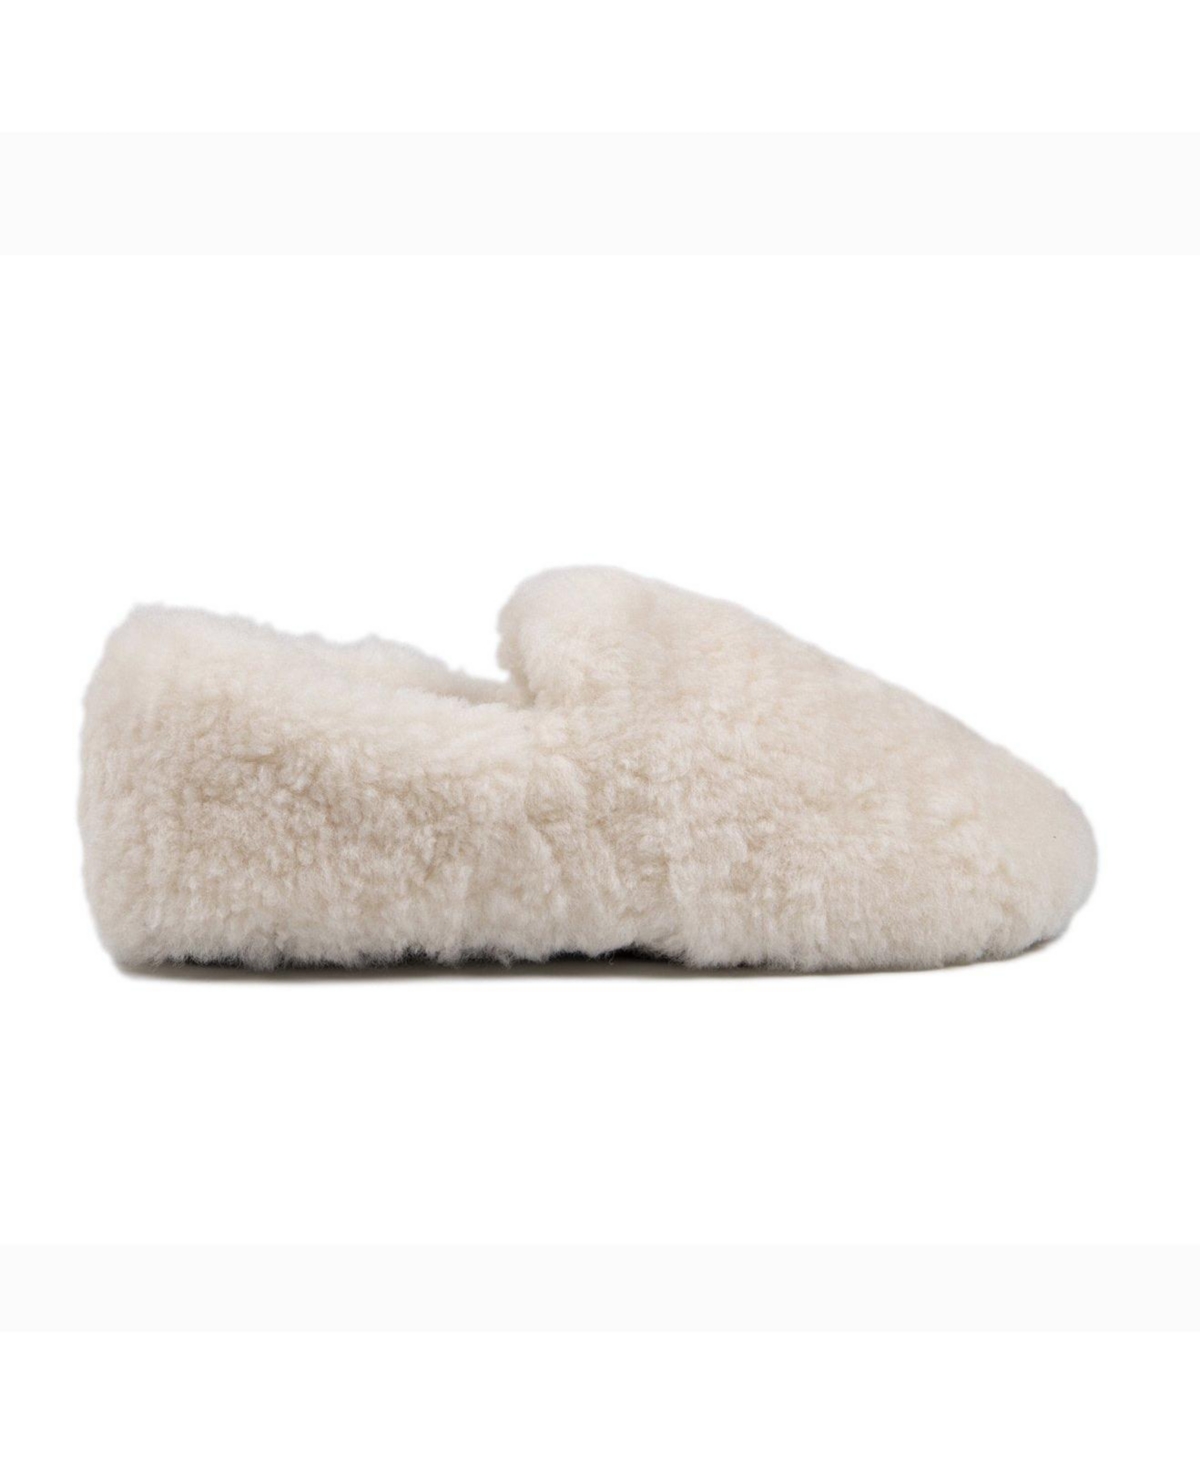 Ladies Luna Fluffy Fuzzy Slippers - Cream